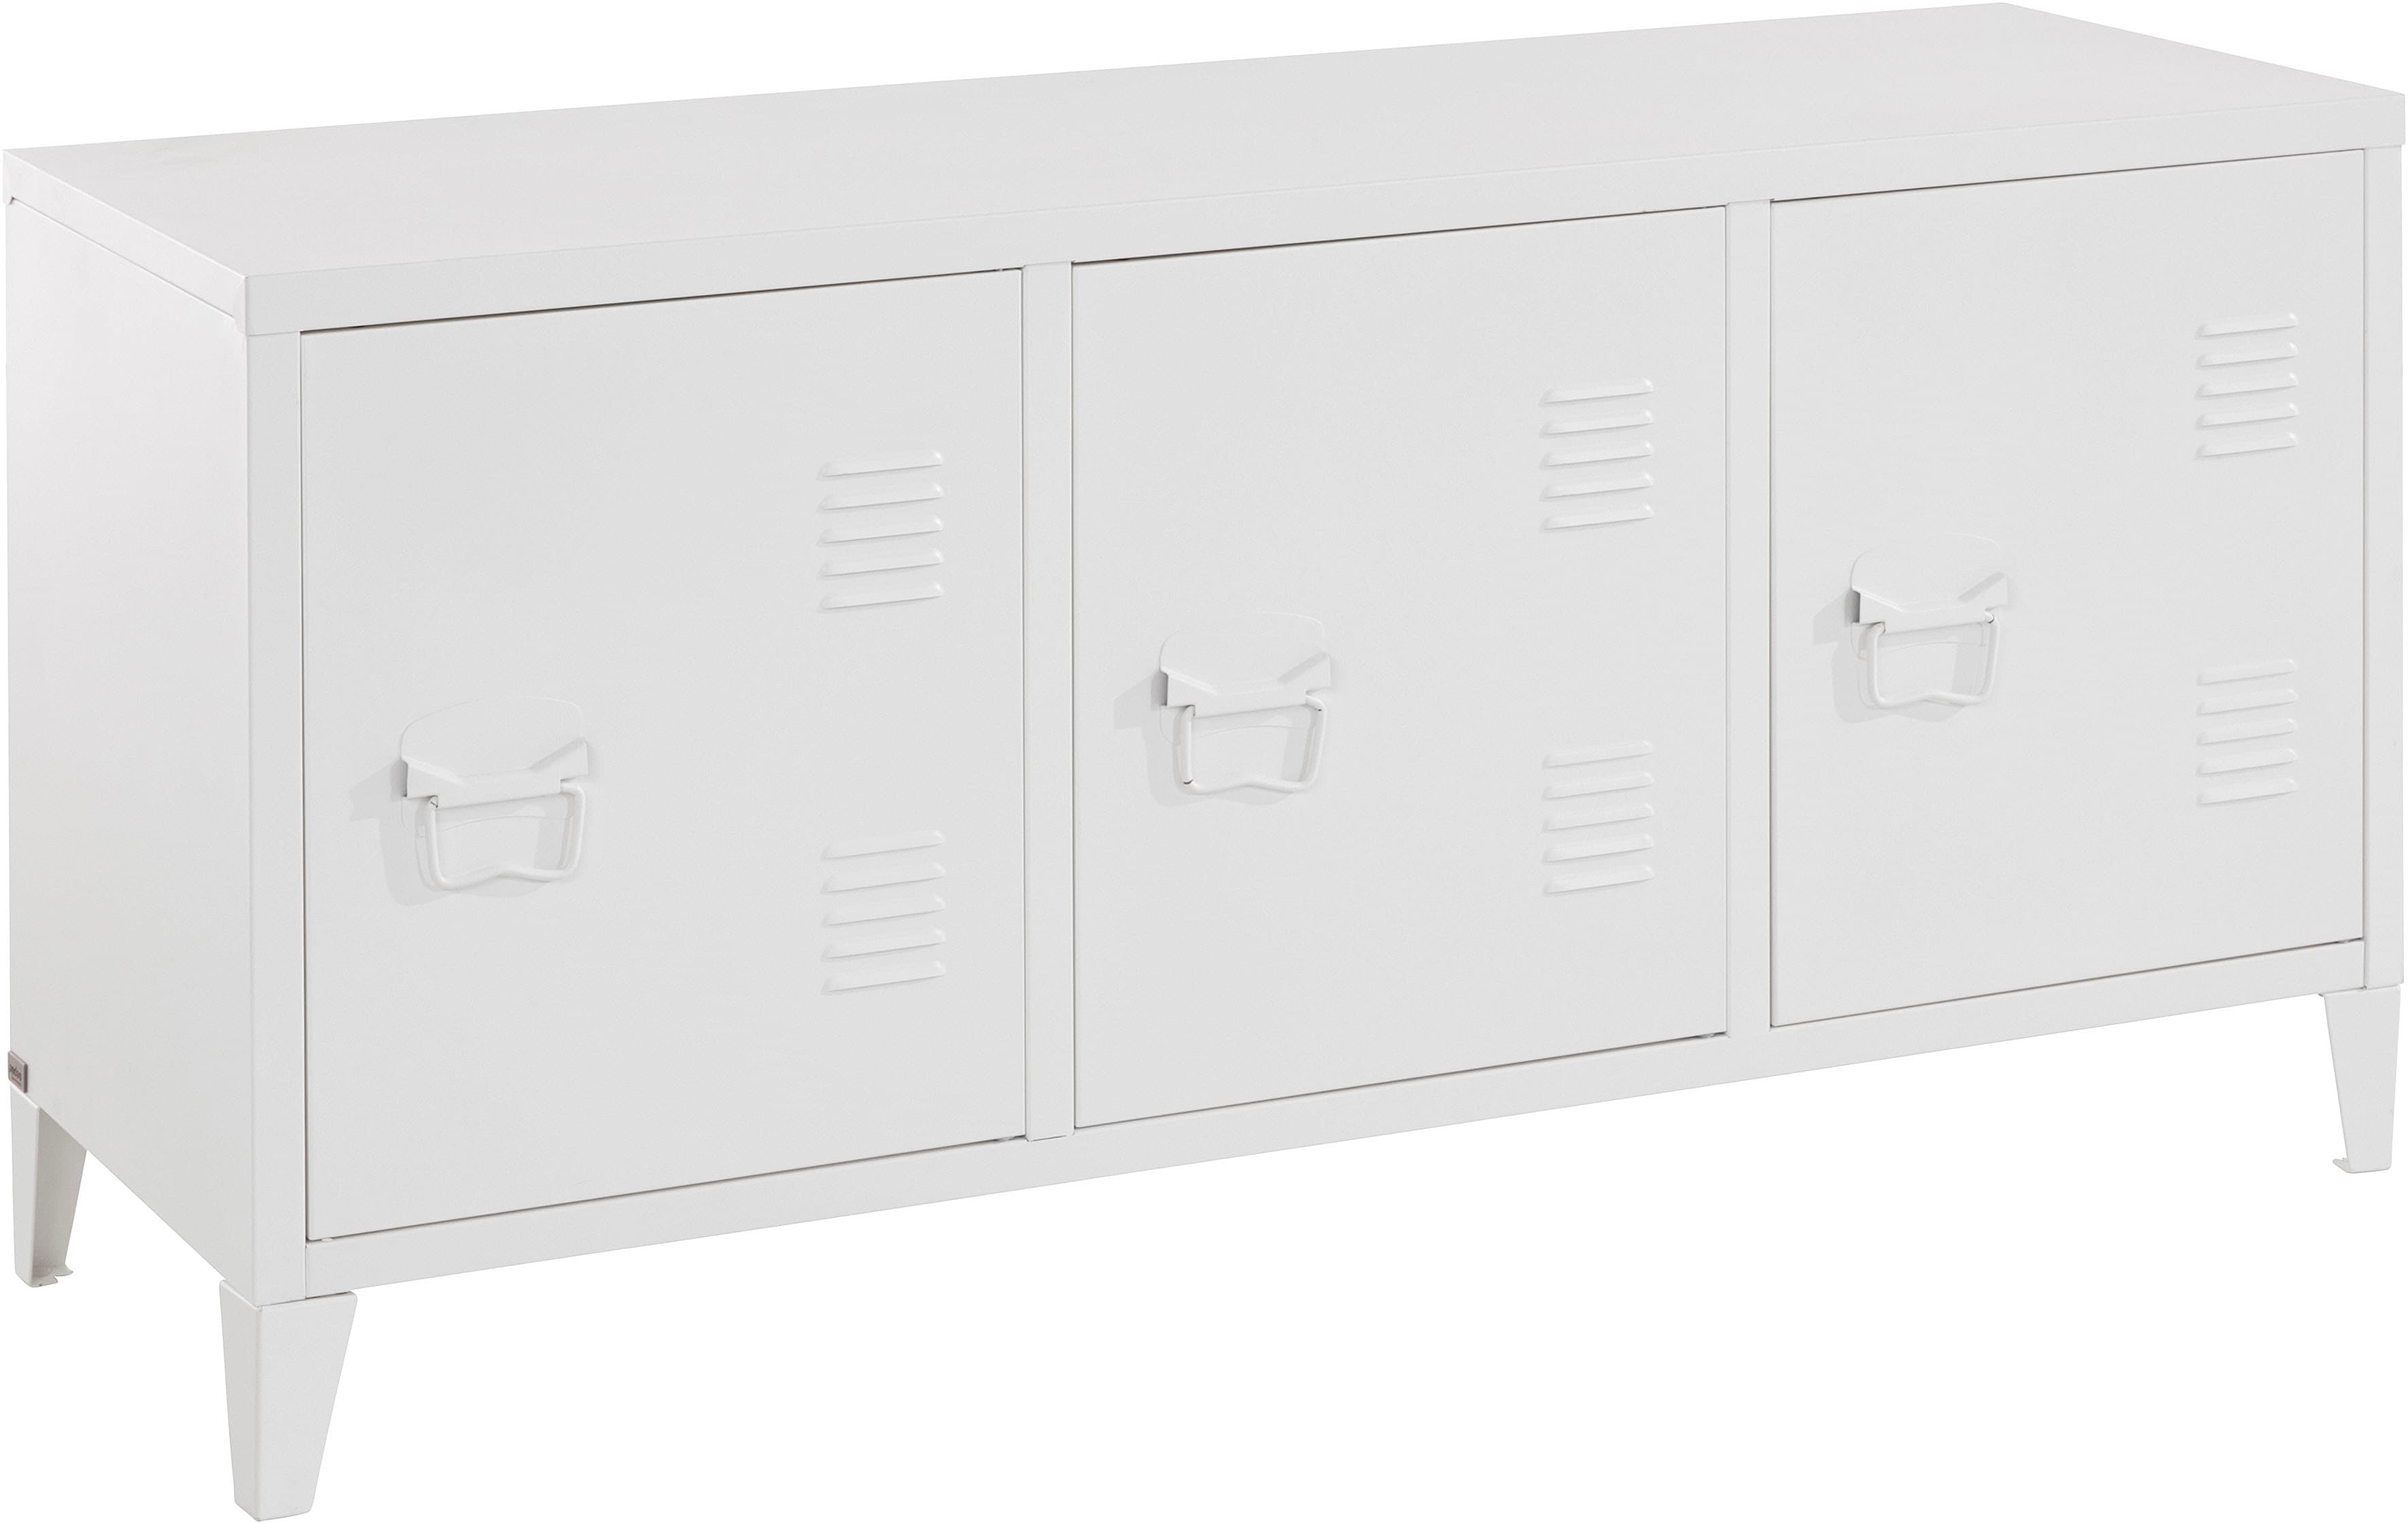 Image of andas Lowboard »Jensjorg«, Lowboard aus pflegeleitem Metall in minimalistishes Design, mit 1 x Einlegeboden hinter der Tür, in verschiedenen Farbvarianten erhältlich, Breite 120 cm bei Ackermann Versand Schweiz